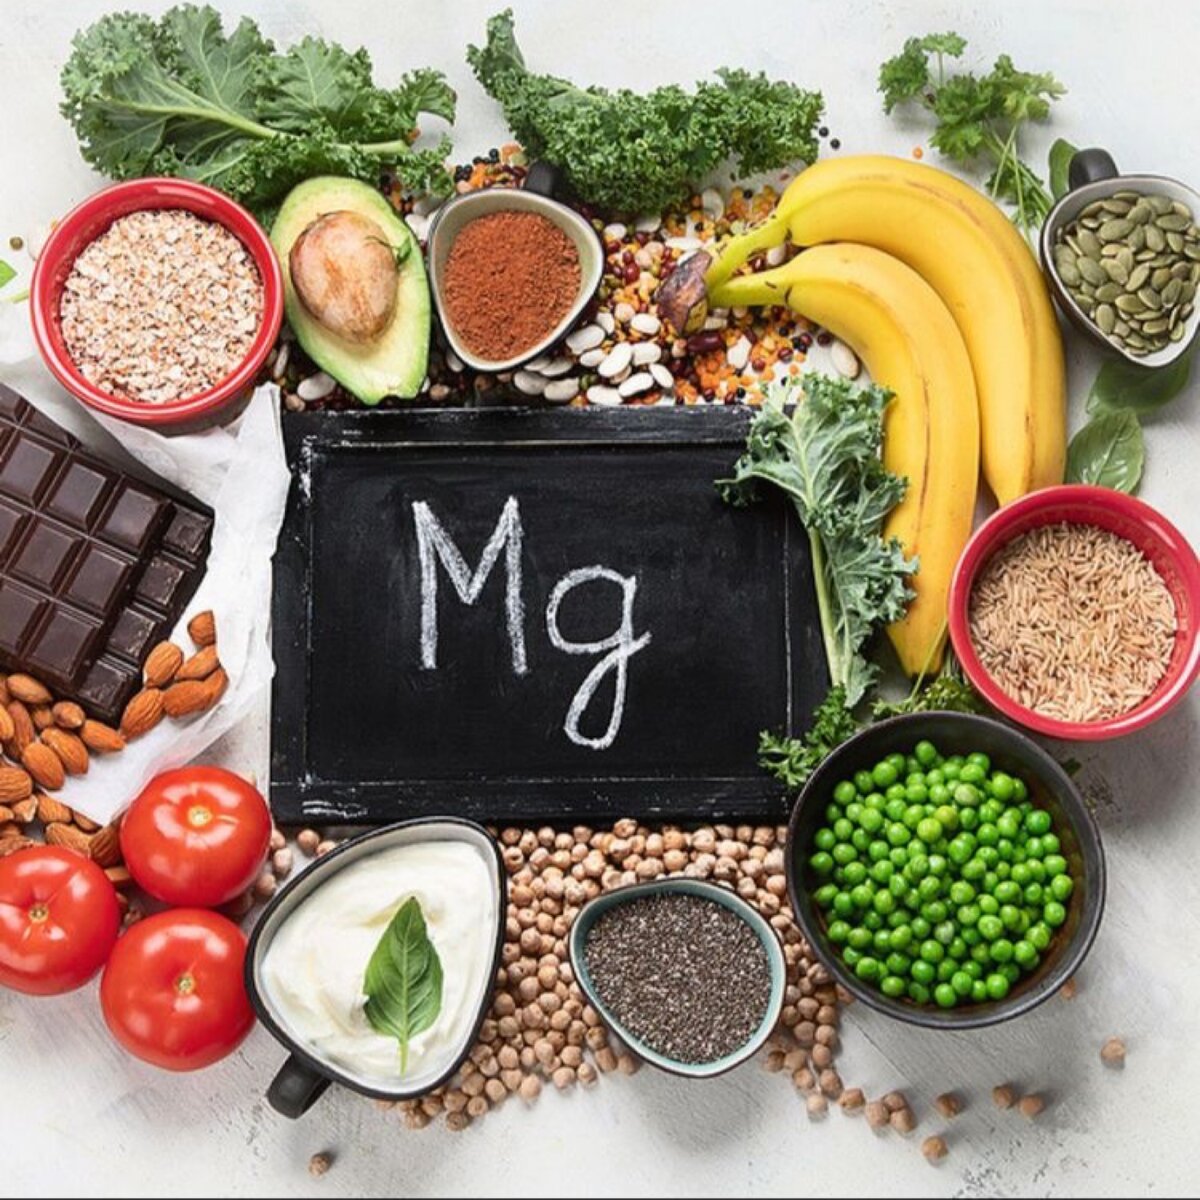 Магний - важнейший минерал, необходимый для здоровья человека. Он содержится во многих продуктах питания, в том числе в зеленых овощах, орехах и цельном зерне.